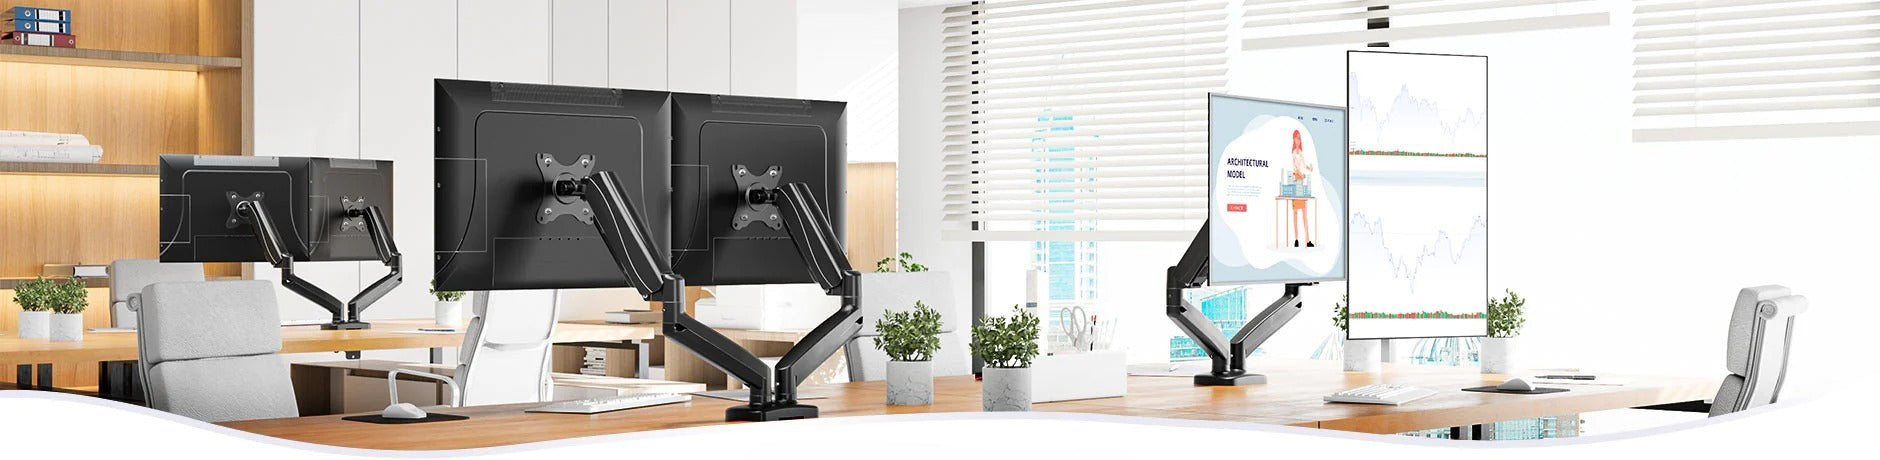 Asztali monitor tartó ergo állványokra és karokra felszerelt monitorok irodai környezetben.